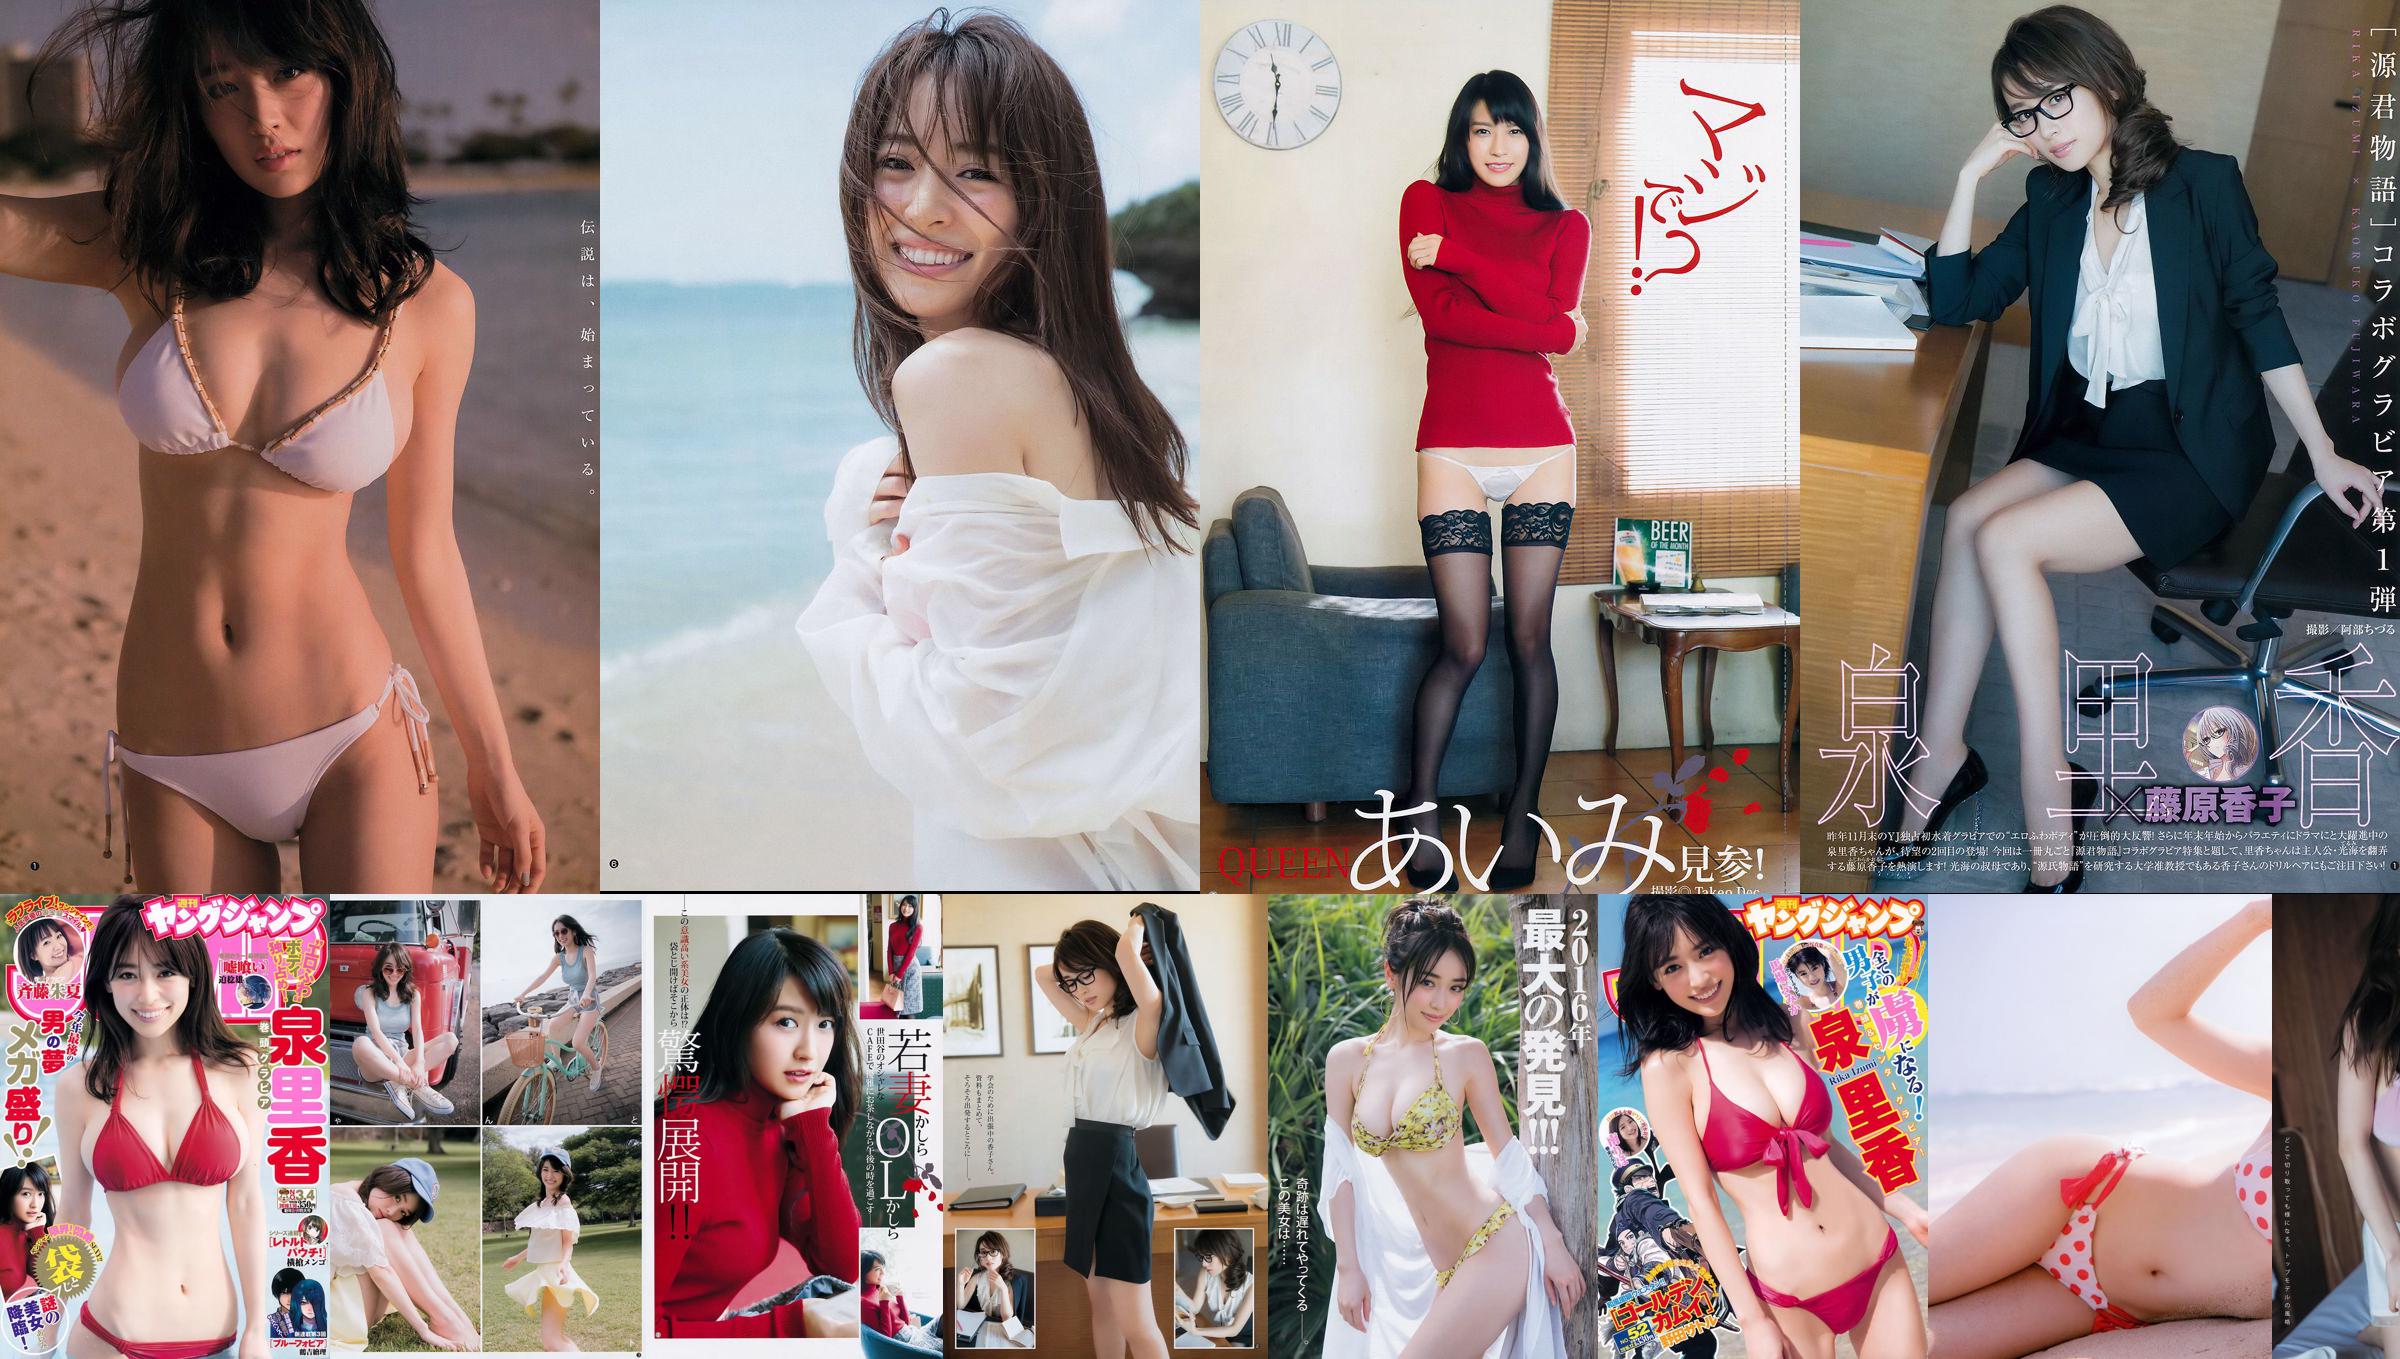 Tomomi Morisaki "Vẻ đẹp SEXY cao cấp và chuyến đi suối nước nóng" [YS-Web] Vol.821 No.2603c6 Trang 3